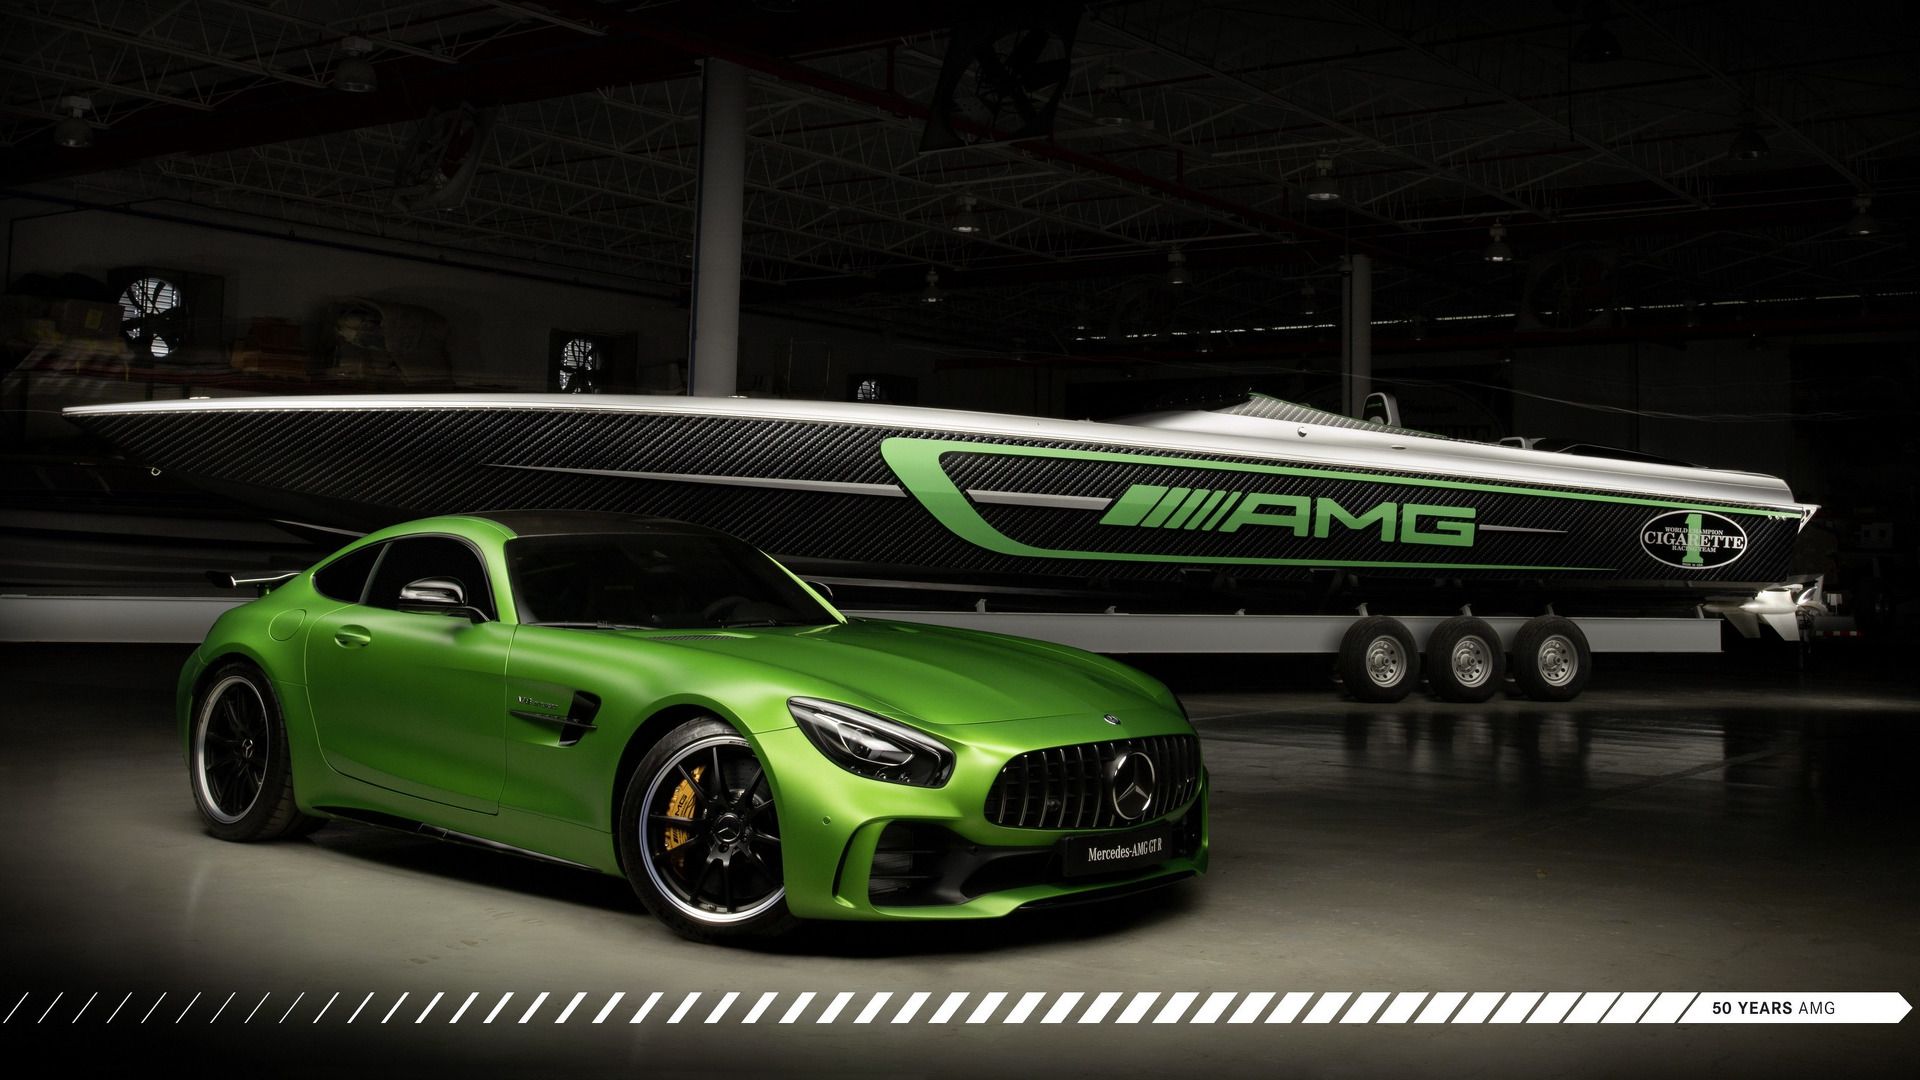 Mercedes AMG GT R Cigarette Racing Boat Has A Pleasure Key Fob